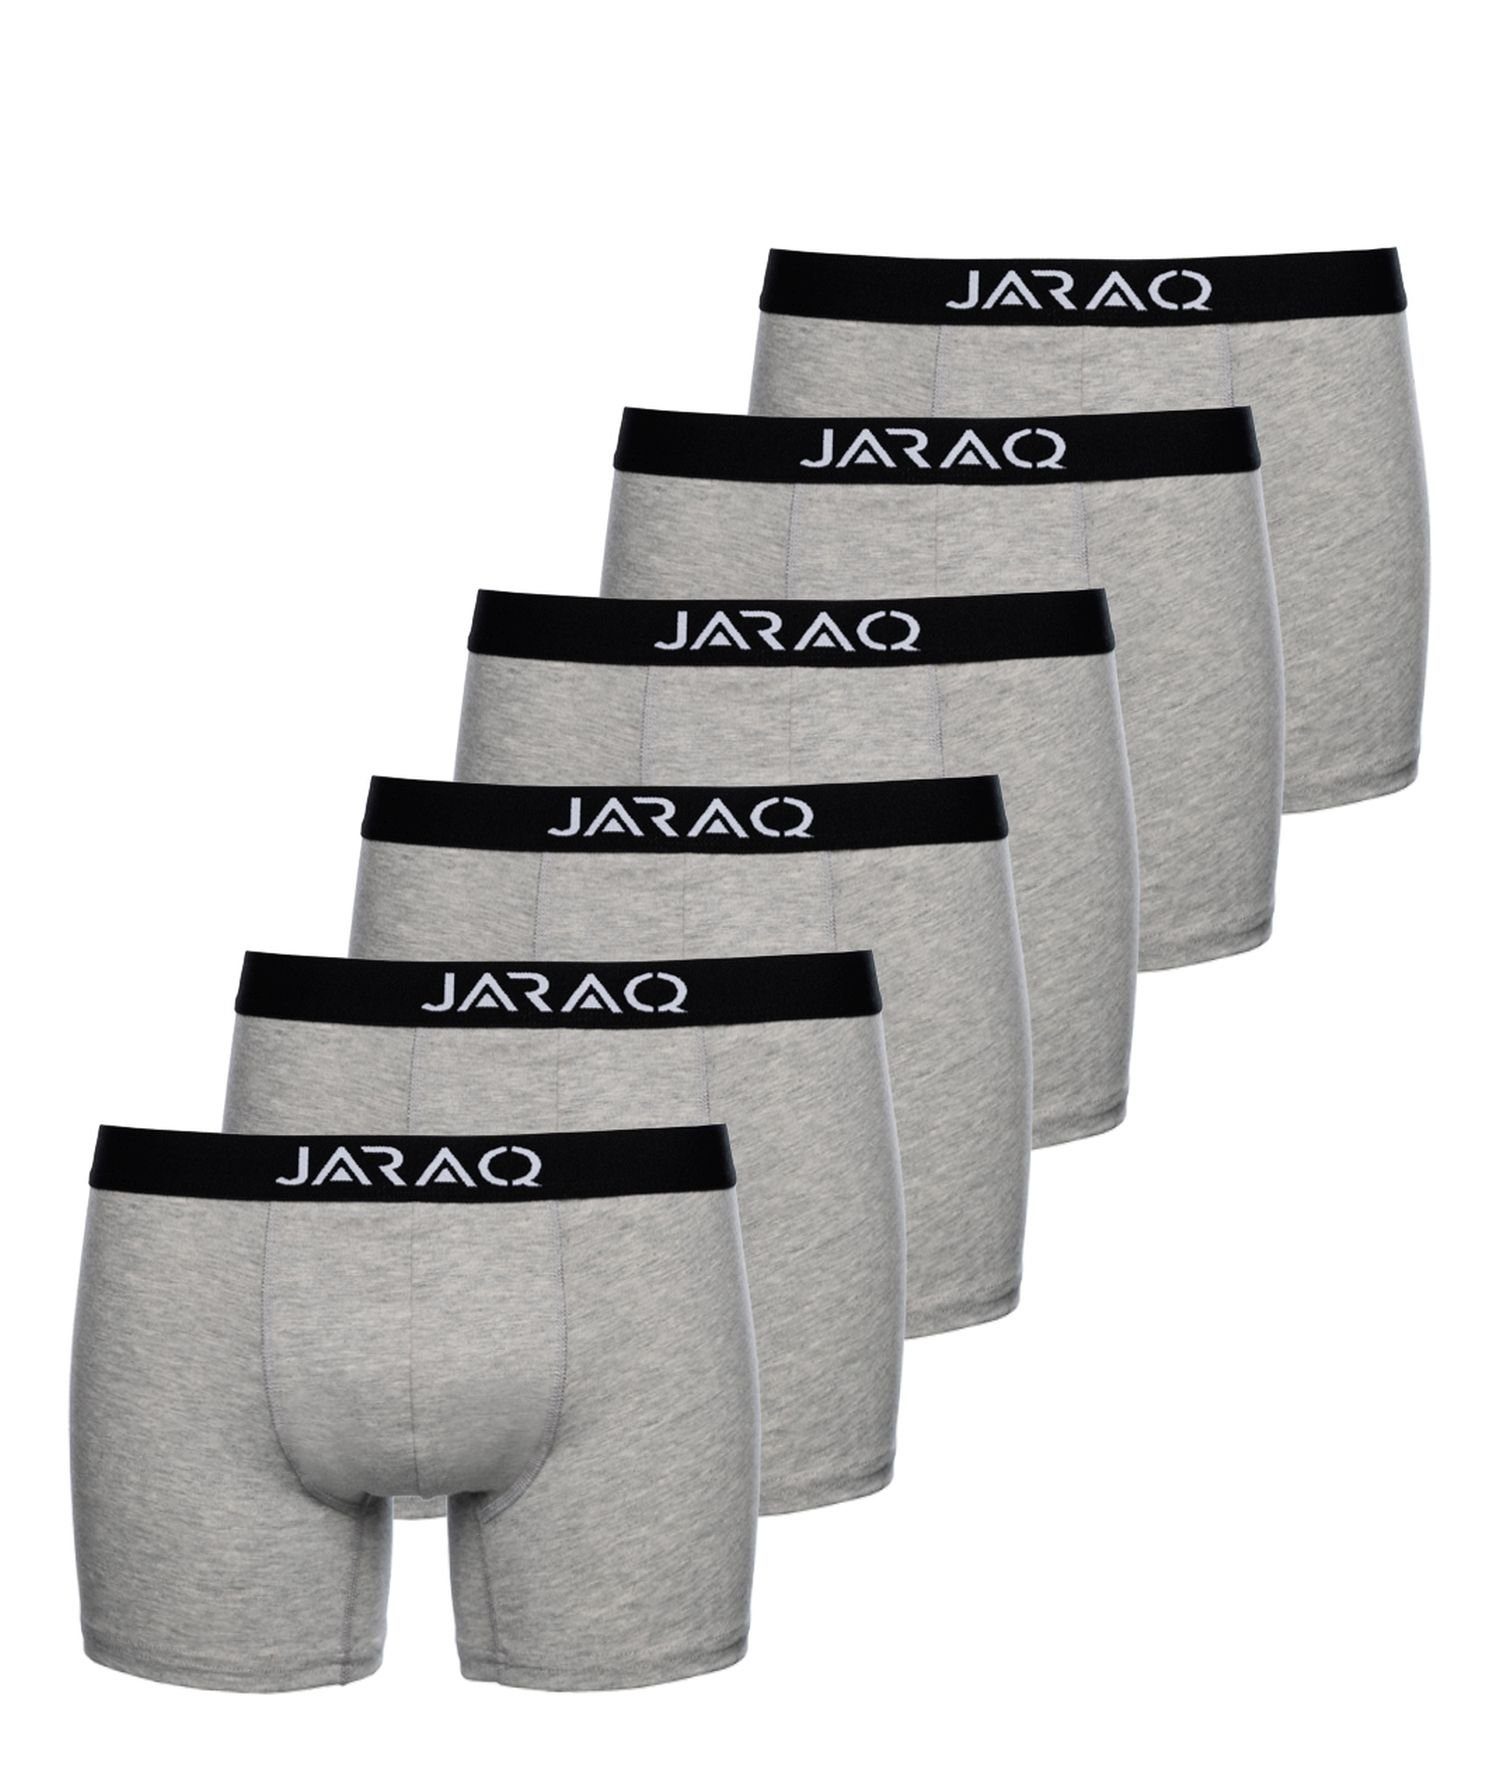 JARAQ Boxer JARAQ Baumwolle Boxershorts Herren 6er Pack Perfekte Passform Unterhosen für Männer S - 4XL Hellgrau (6-St)